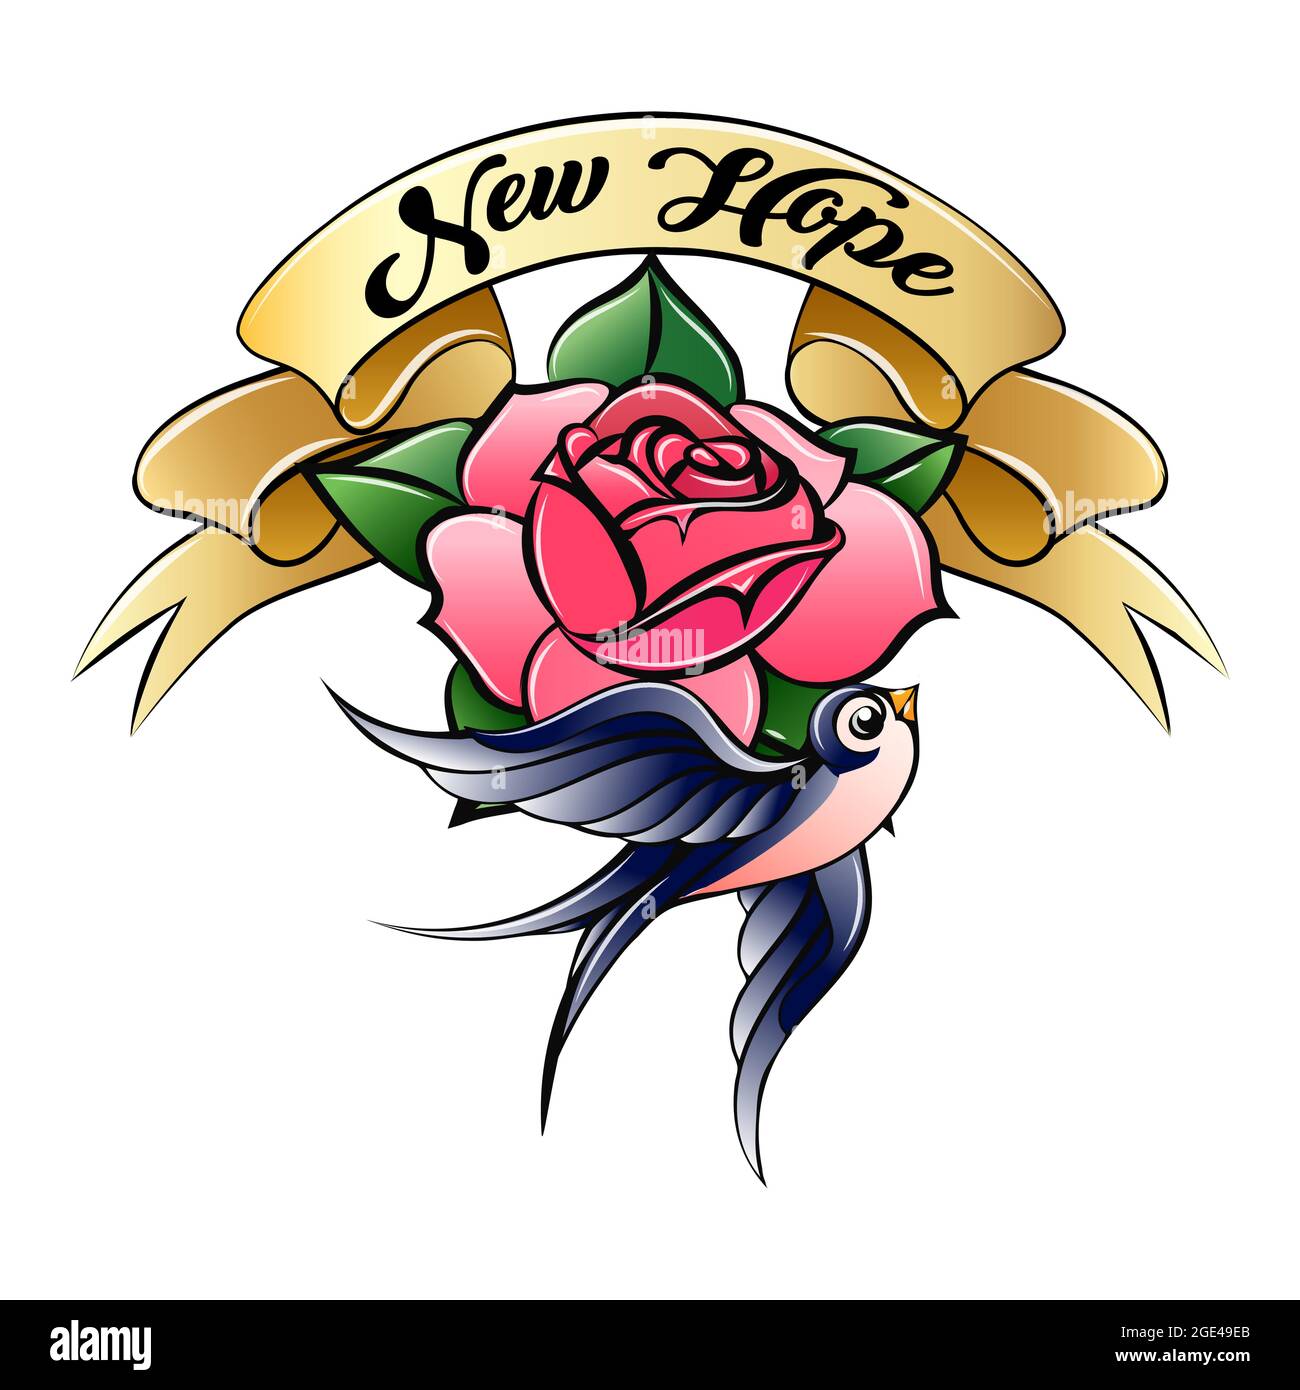 Old-School style tatouage d'une hirondelle avec rose et bannière de New Hope isolée sur blanc. Illustration vectorielle. Illustration de Vecteur